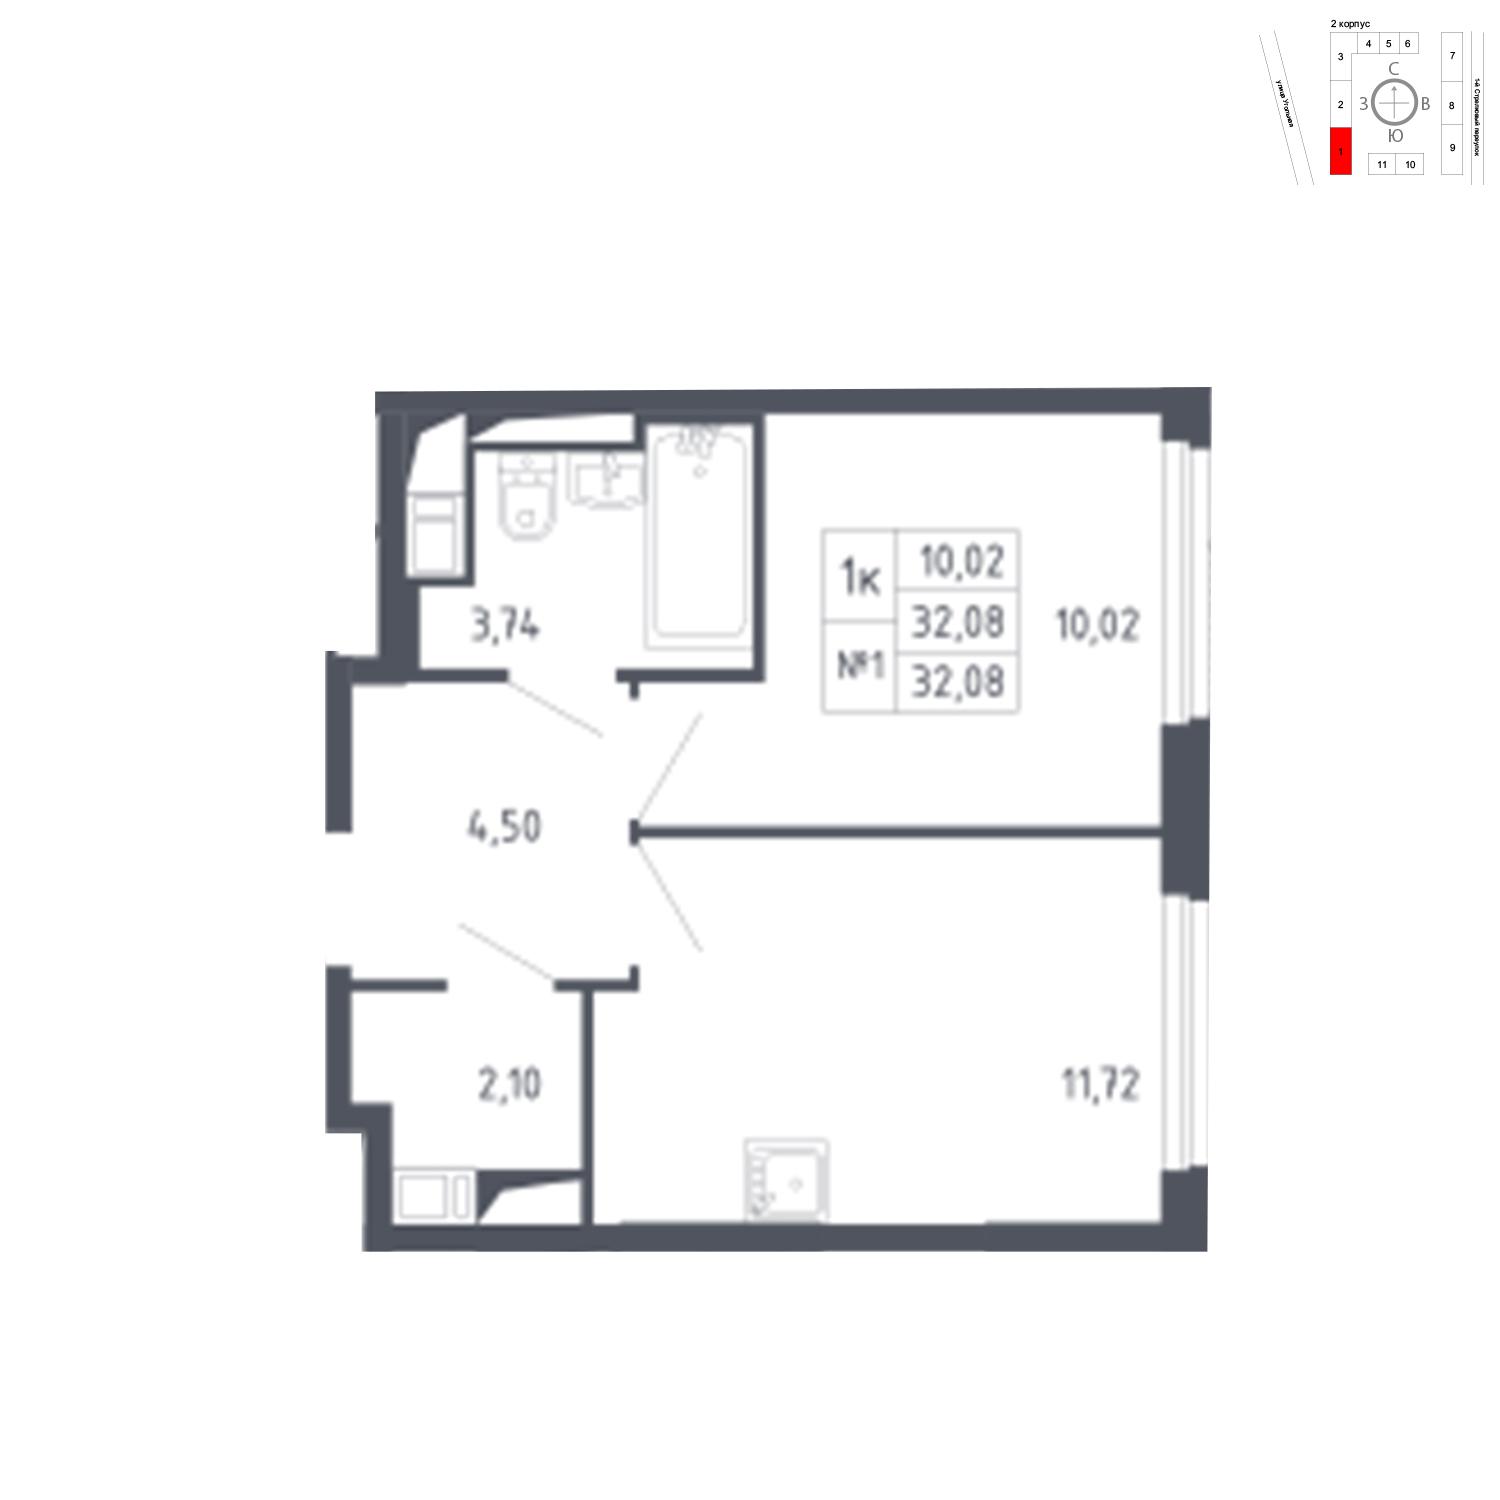 Продаётся 1-комнатная квартира в новостройке 32.1 кв.м. этаж 10/17 за 6 803 036 руб 